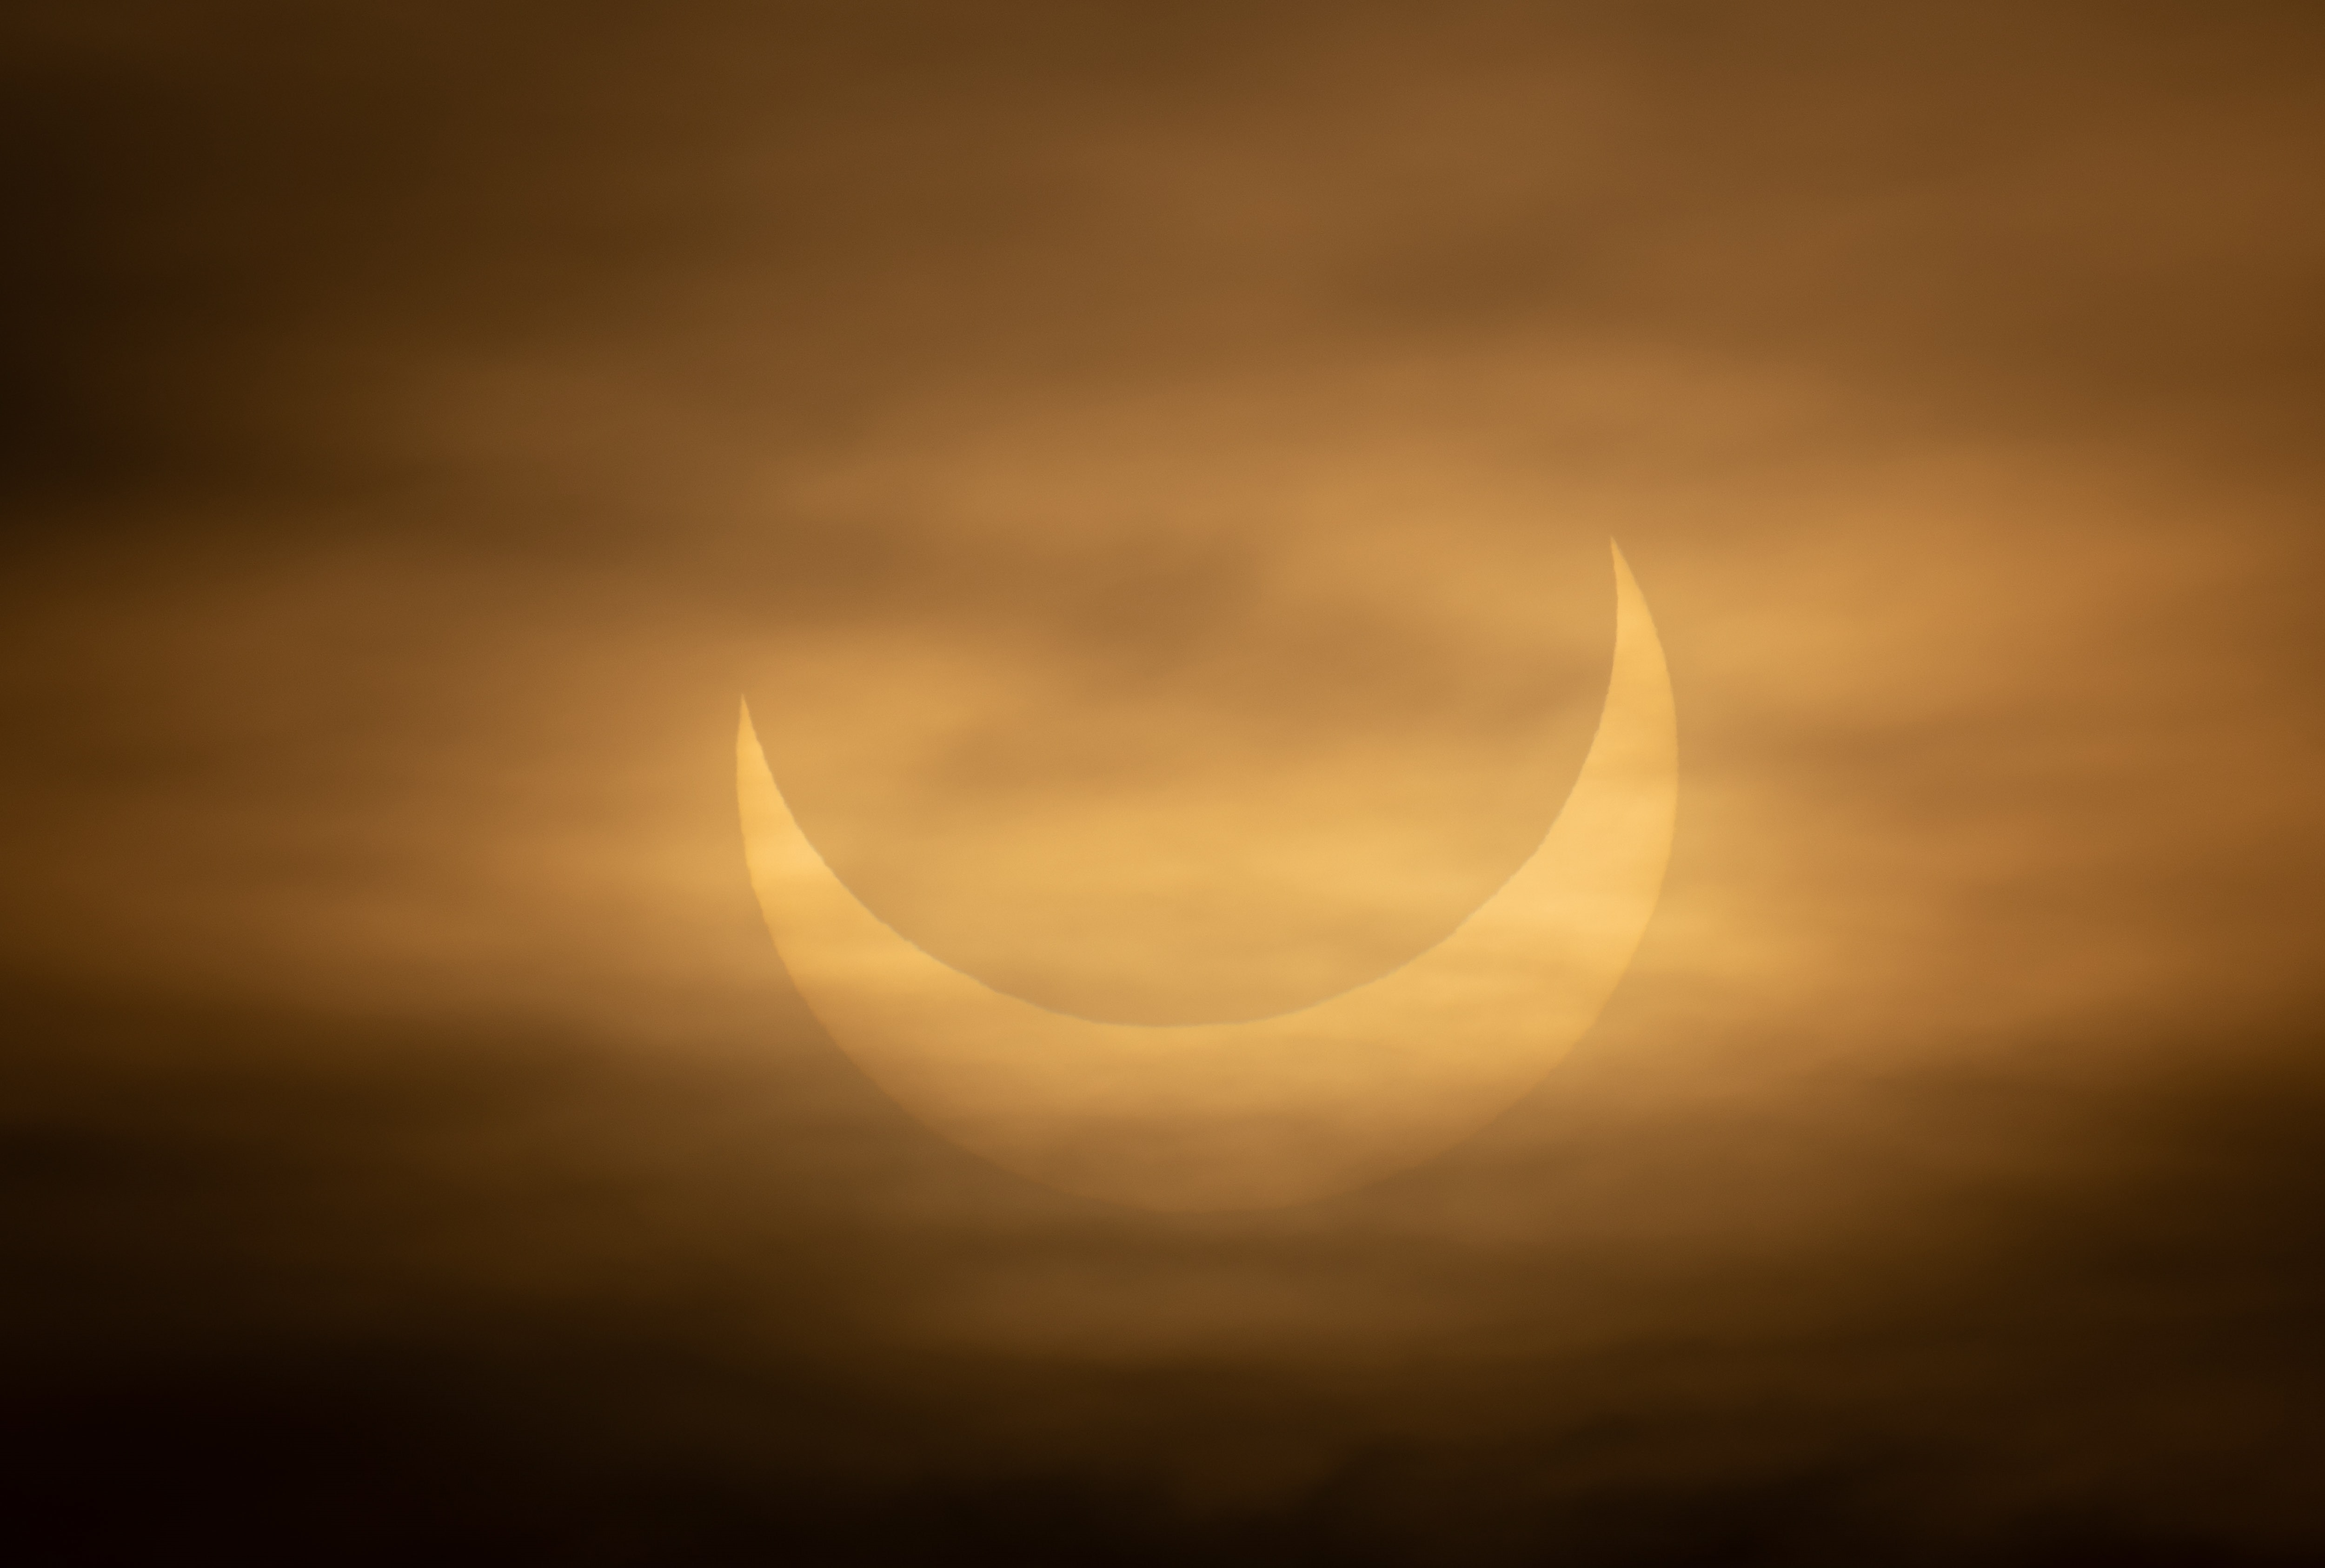 El eclipse solar parcial será visible en diferentes grados cerca de la puesta del sol a través de una franja del Océano Pacífico Sur y porciones sur y oeste de Sudamérica, incluidos Chile, Argentina, Uruguay, el sur de Perú, el sur de Bolivia, el oeste de Paraguay y una pequeña porción de Brasil( EFE/EPA/CJ GUNTHER)
